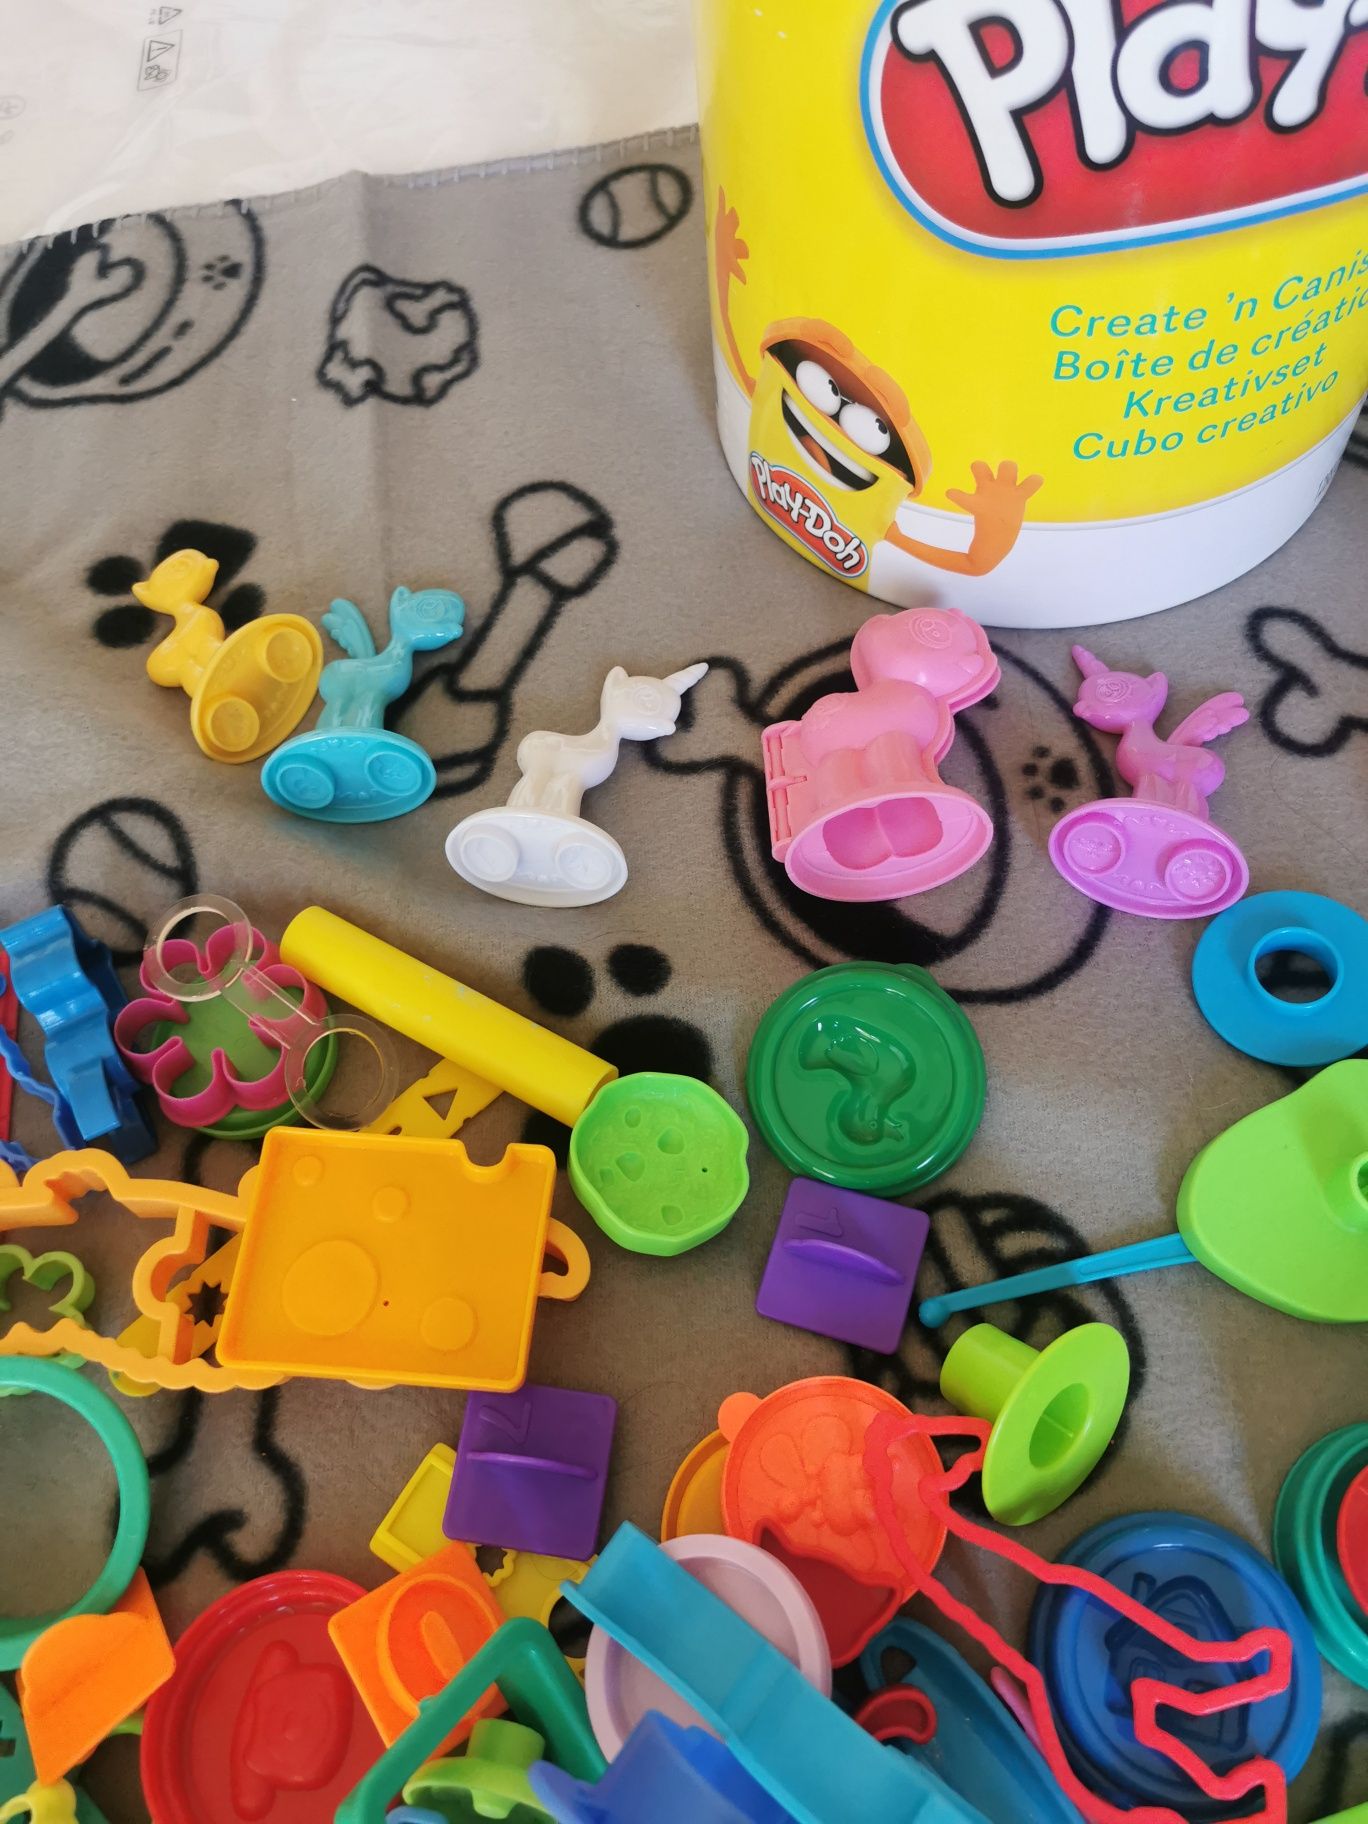 Play-doh zestaw zabawek do plasteliny